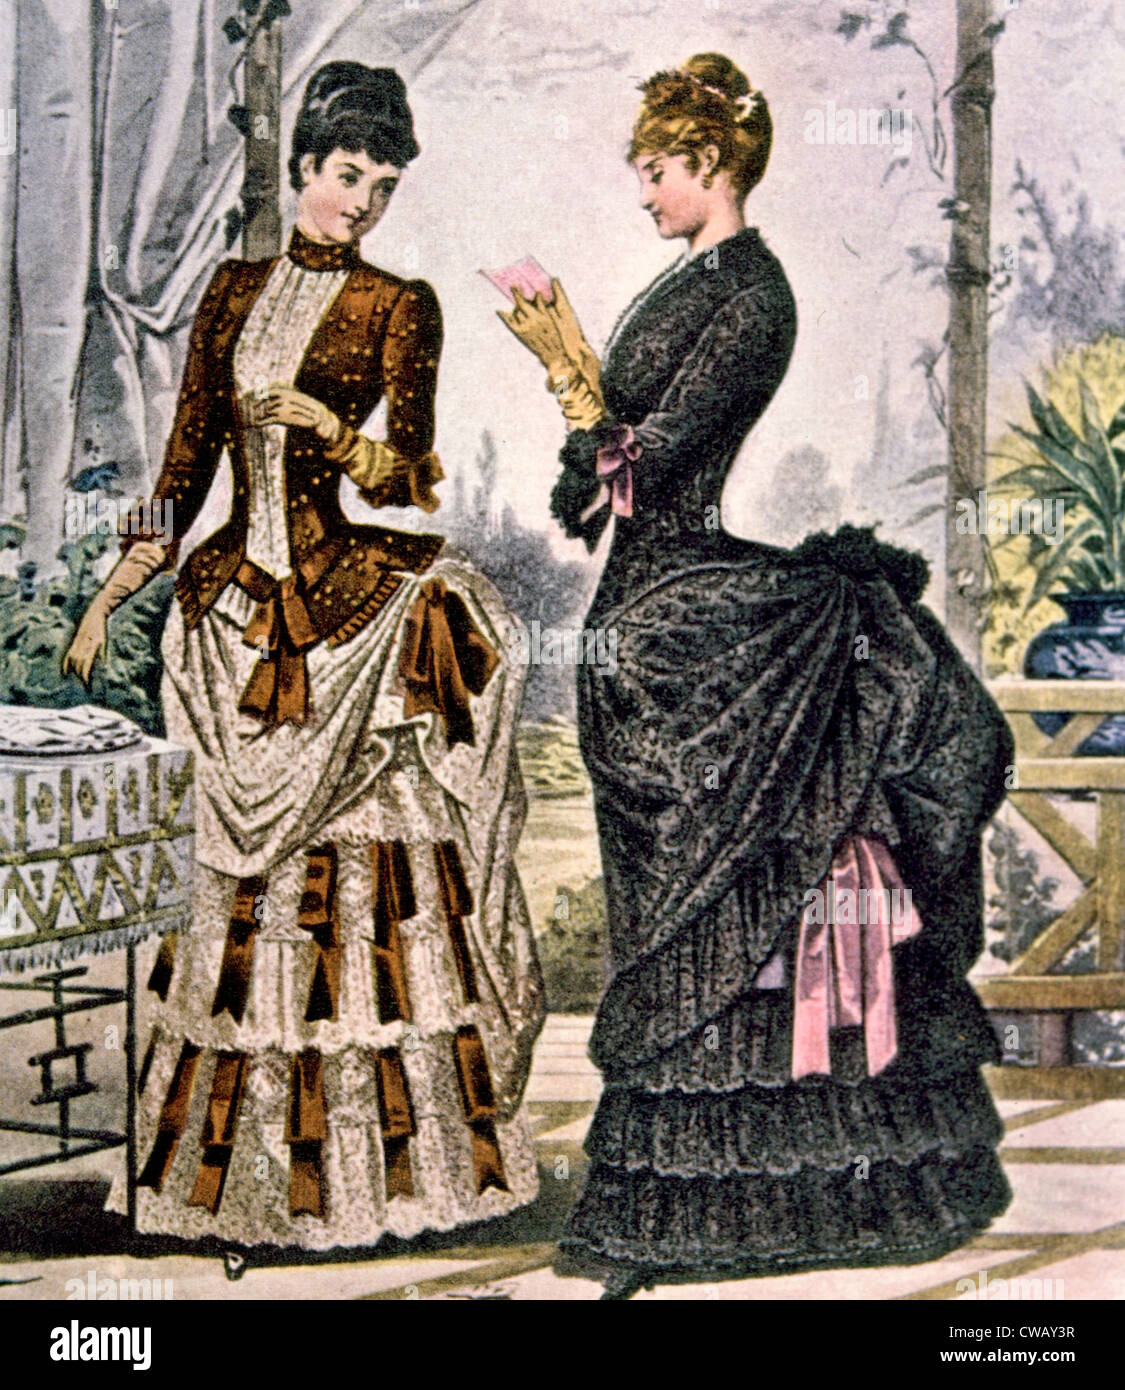 Zwei Frauen treiben Kleider, ca. 1880 s tragen. Foto: Courtesy Everett Collection Stockfoto